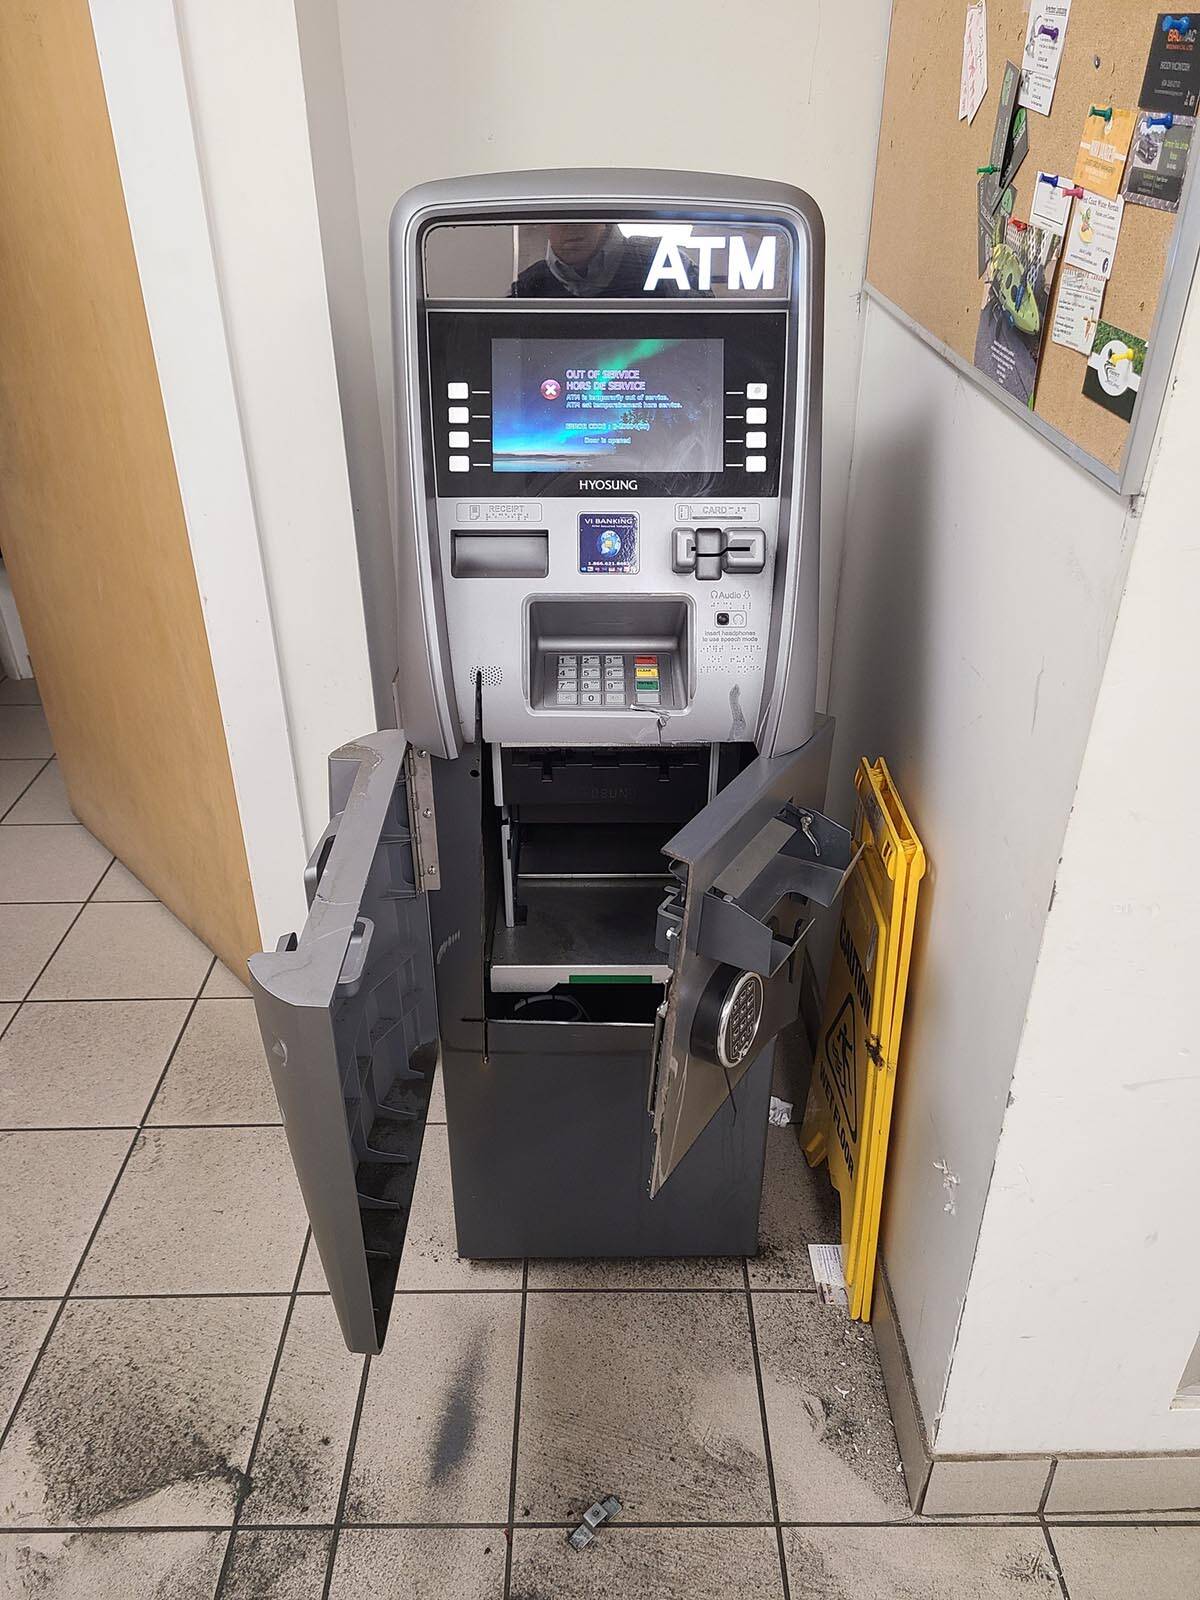 30171186_web1_220826-MCR-ATM-theft-ATM-theft_3